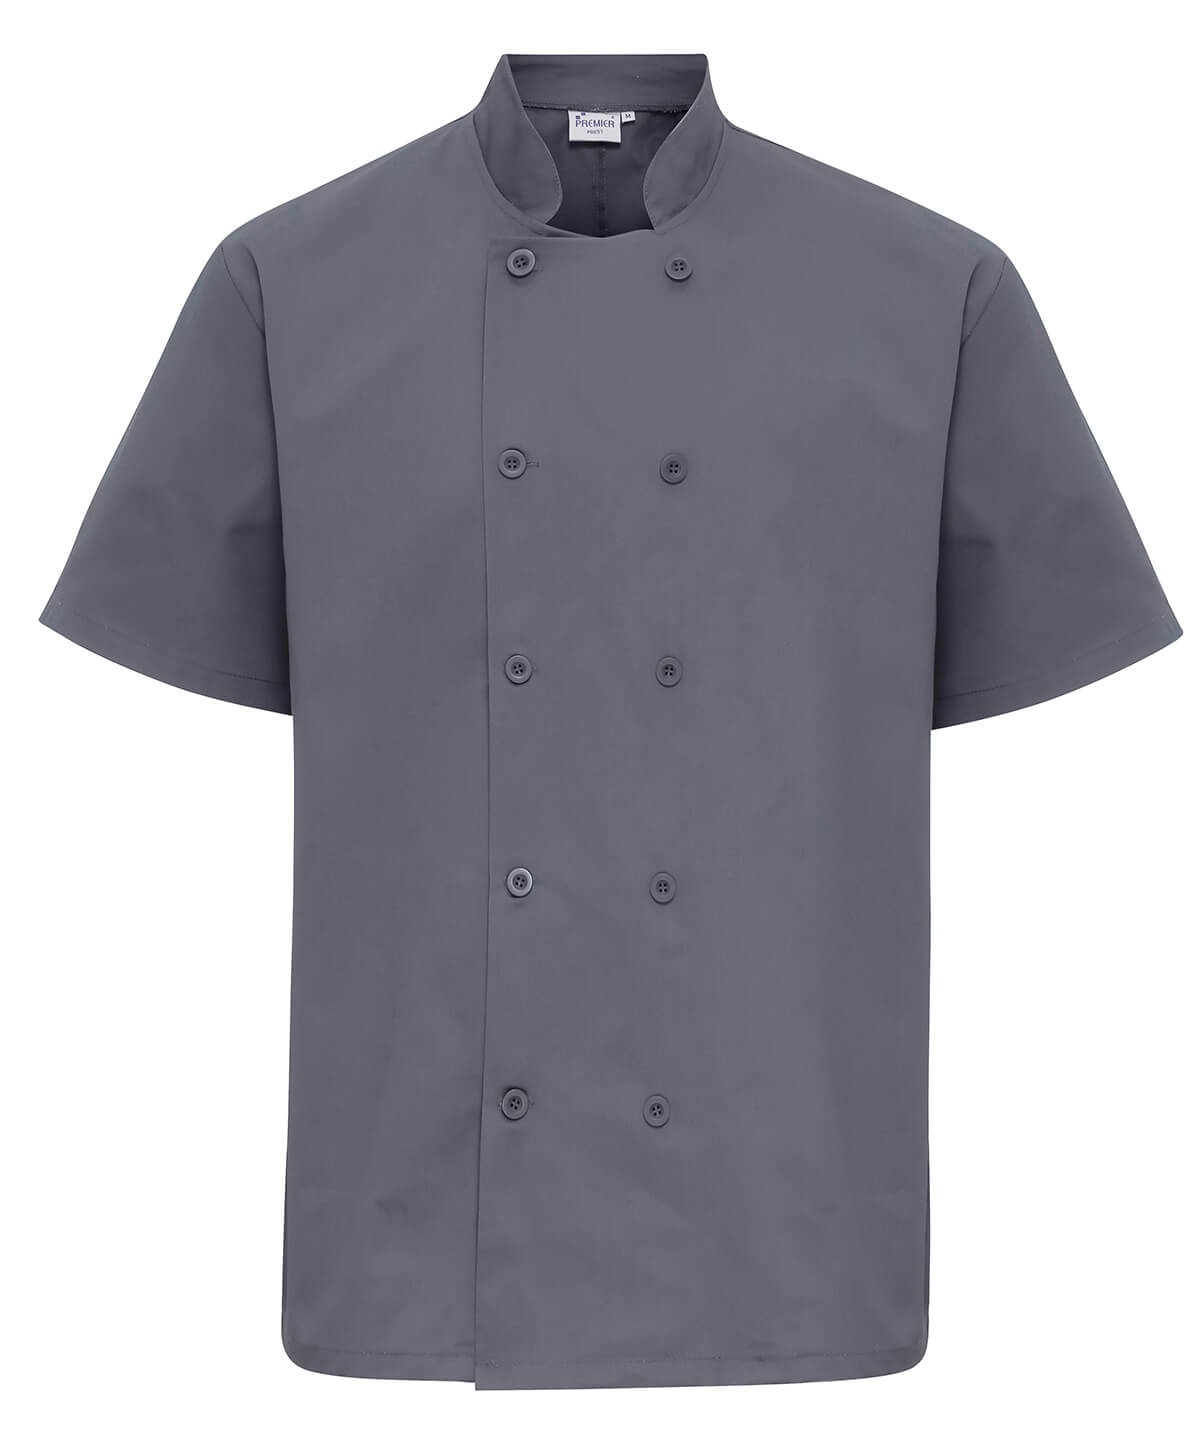 Premier Short Sleeve Chef's Jacket UK - grey chef's jacket